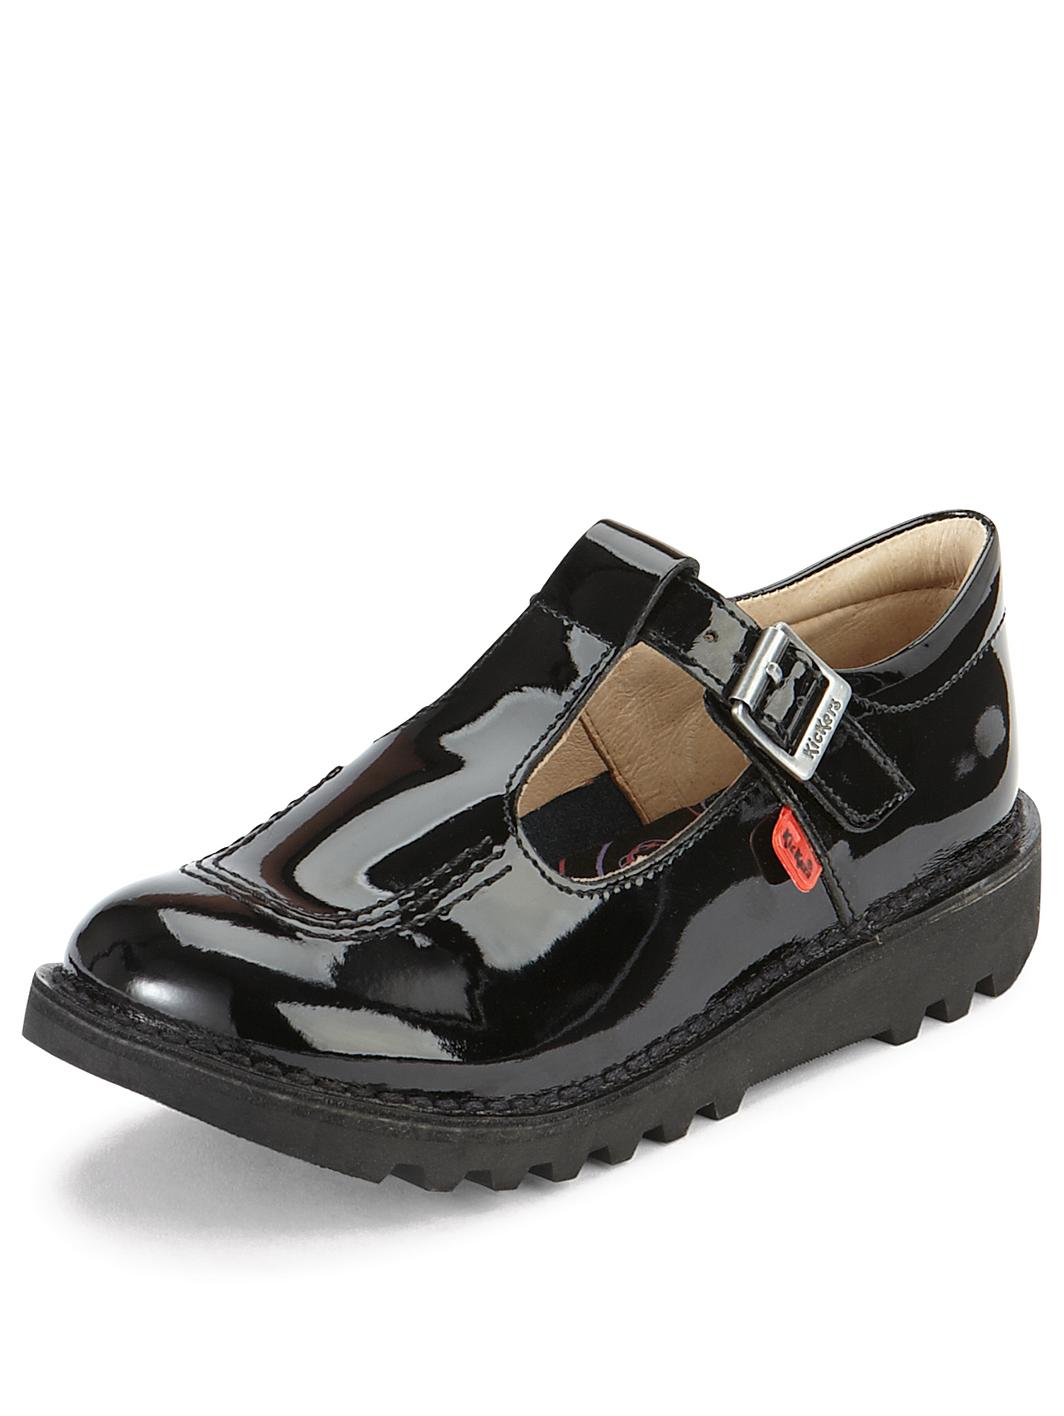 kickers-girls-kick-patent-t-bar-shoes.jpg?$1064x1416_standard$